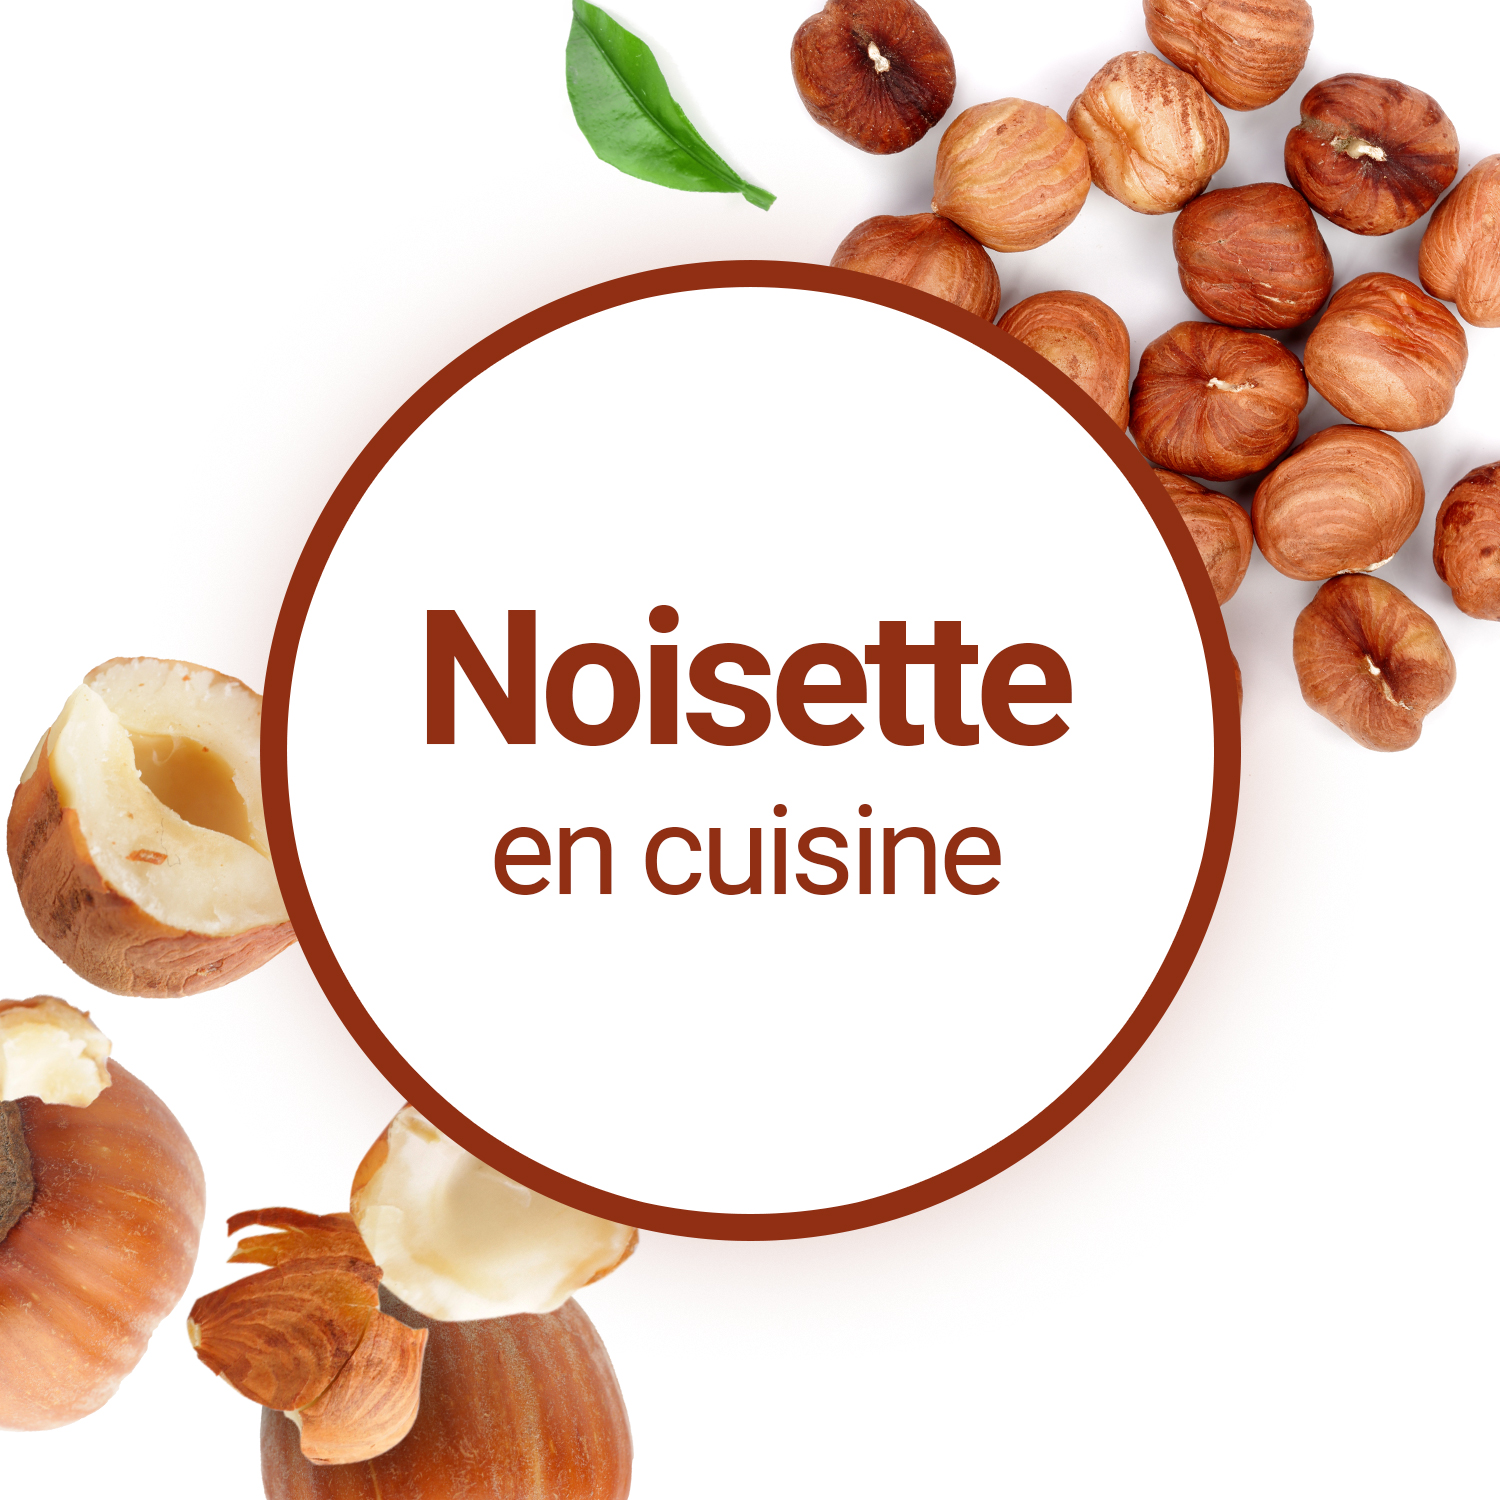 Noisette : valeur nutritive, bienfaits santé, recettes, conservation